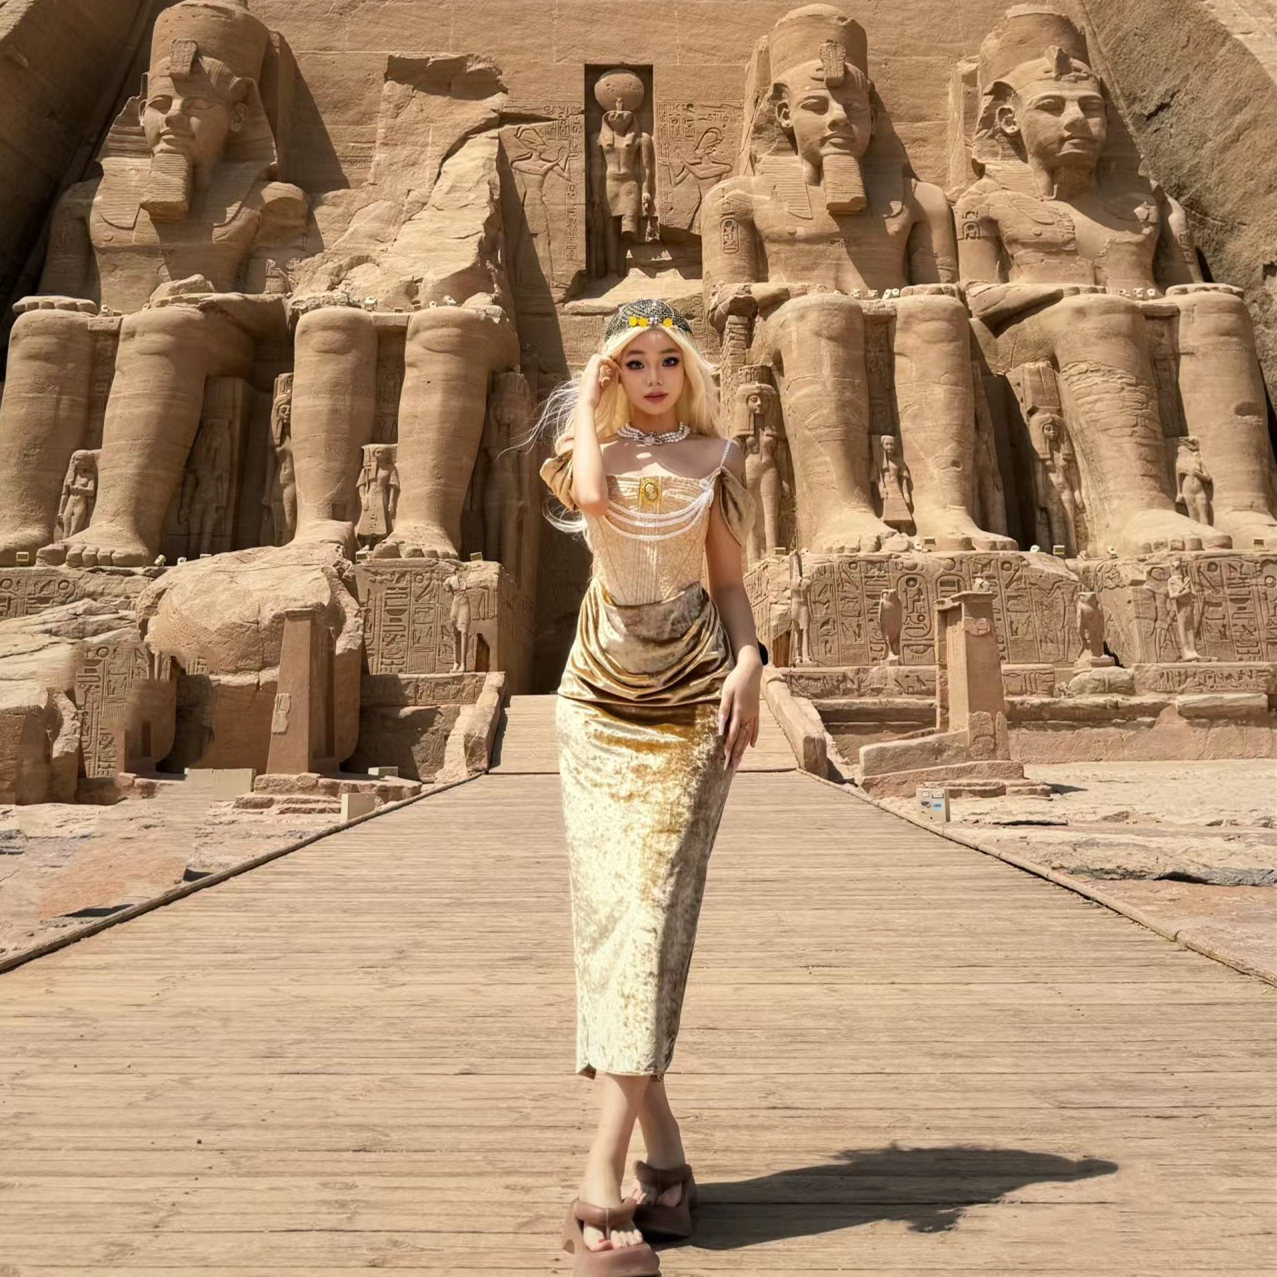 埃及迪拜旅游12天纯玩跟团25人小团金字塔五星游轮埃及旅游博物馆